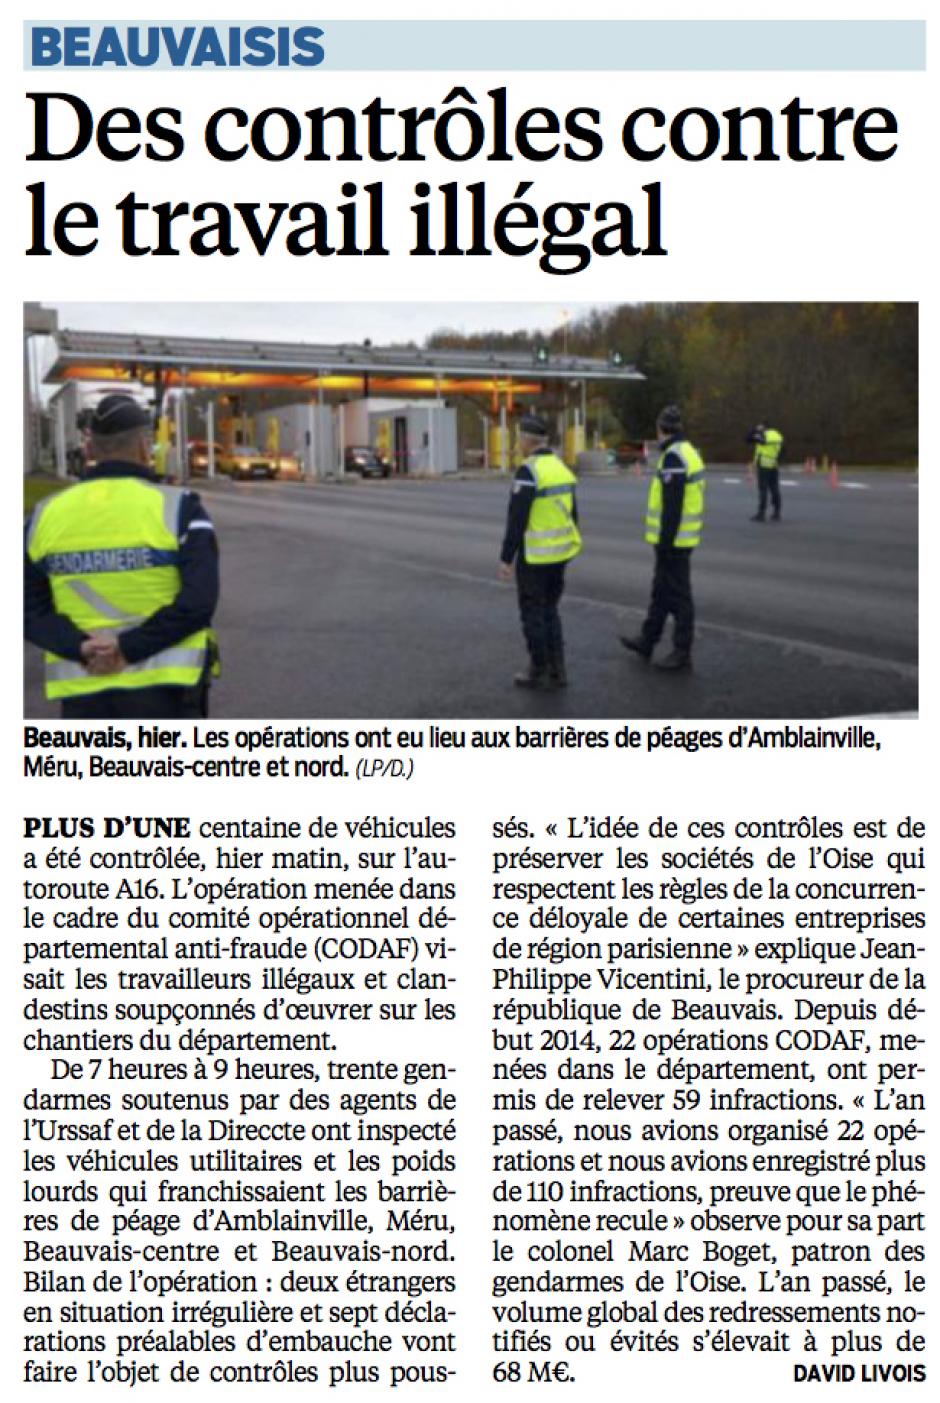 20141125-LeP-Beauvaisis-Des contrôles contre le travail illégal